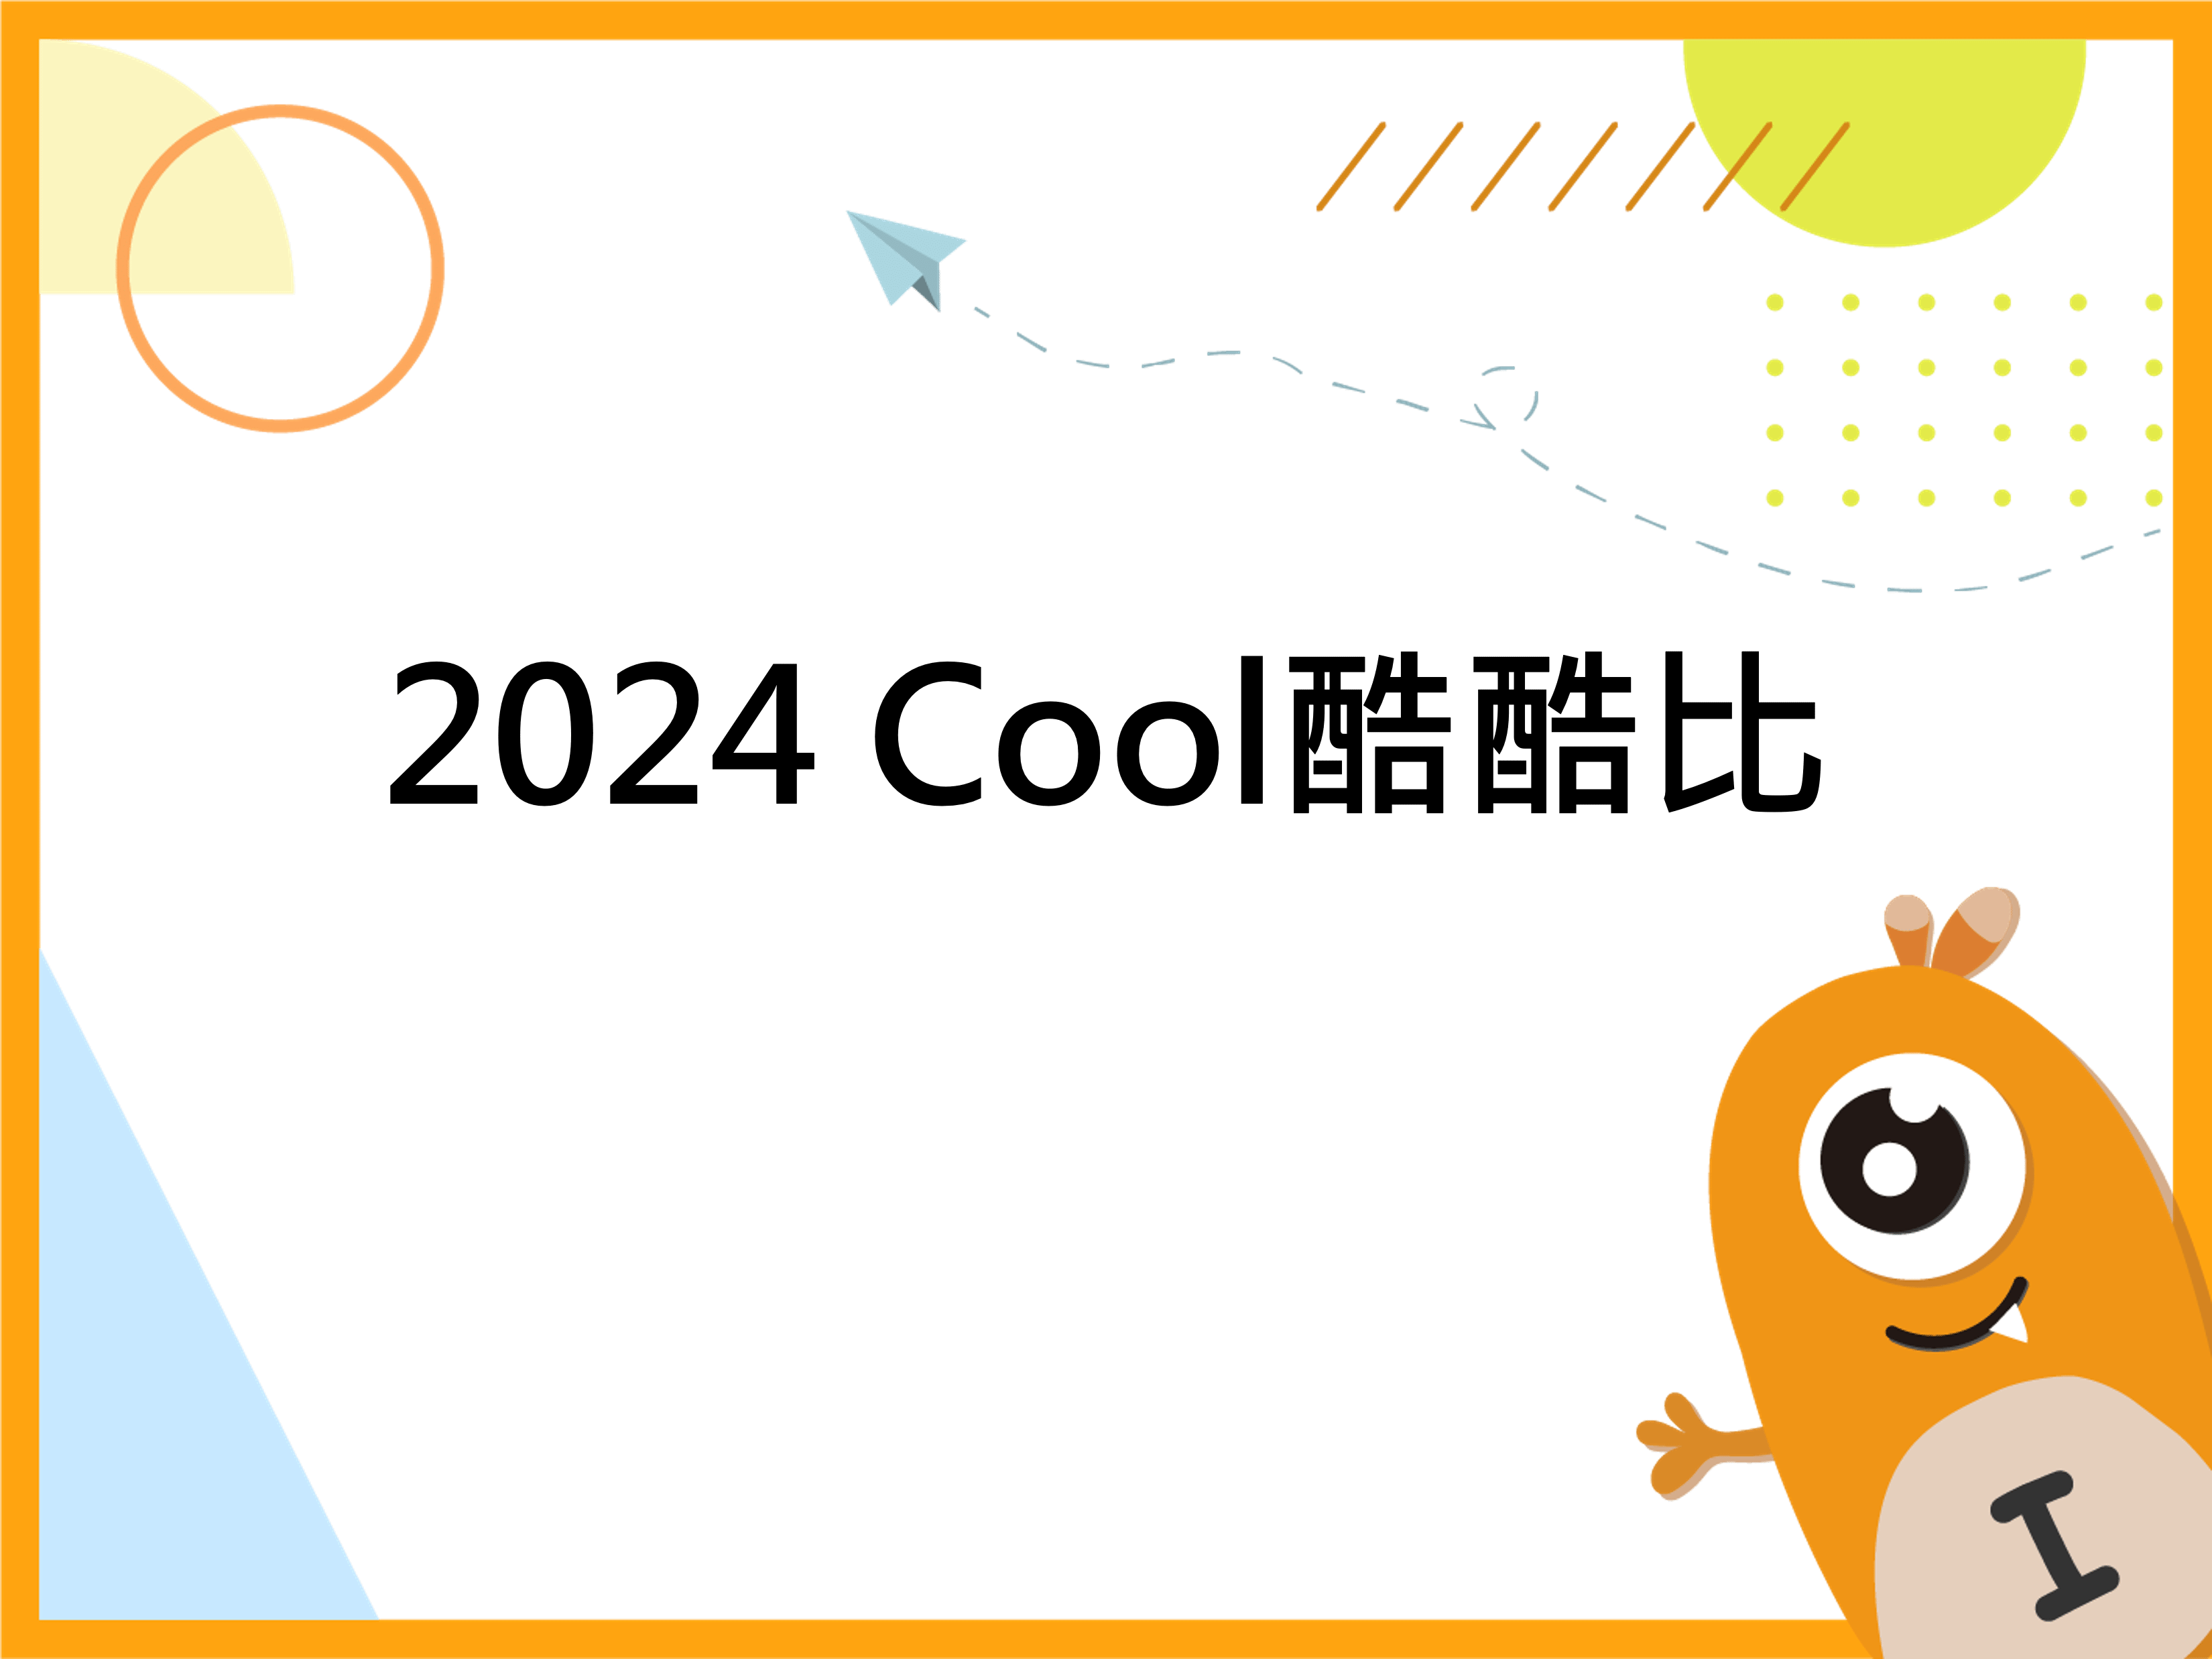 2024 Cool酷酷比